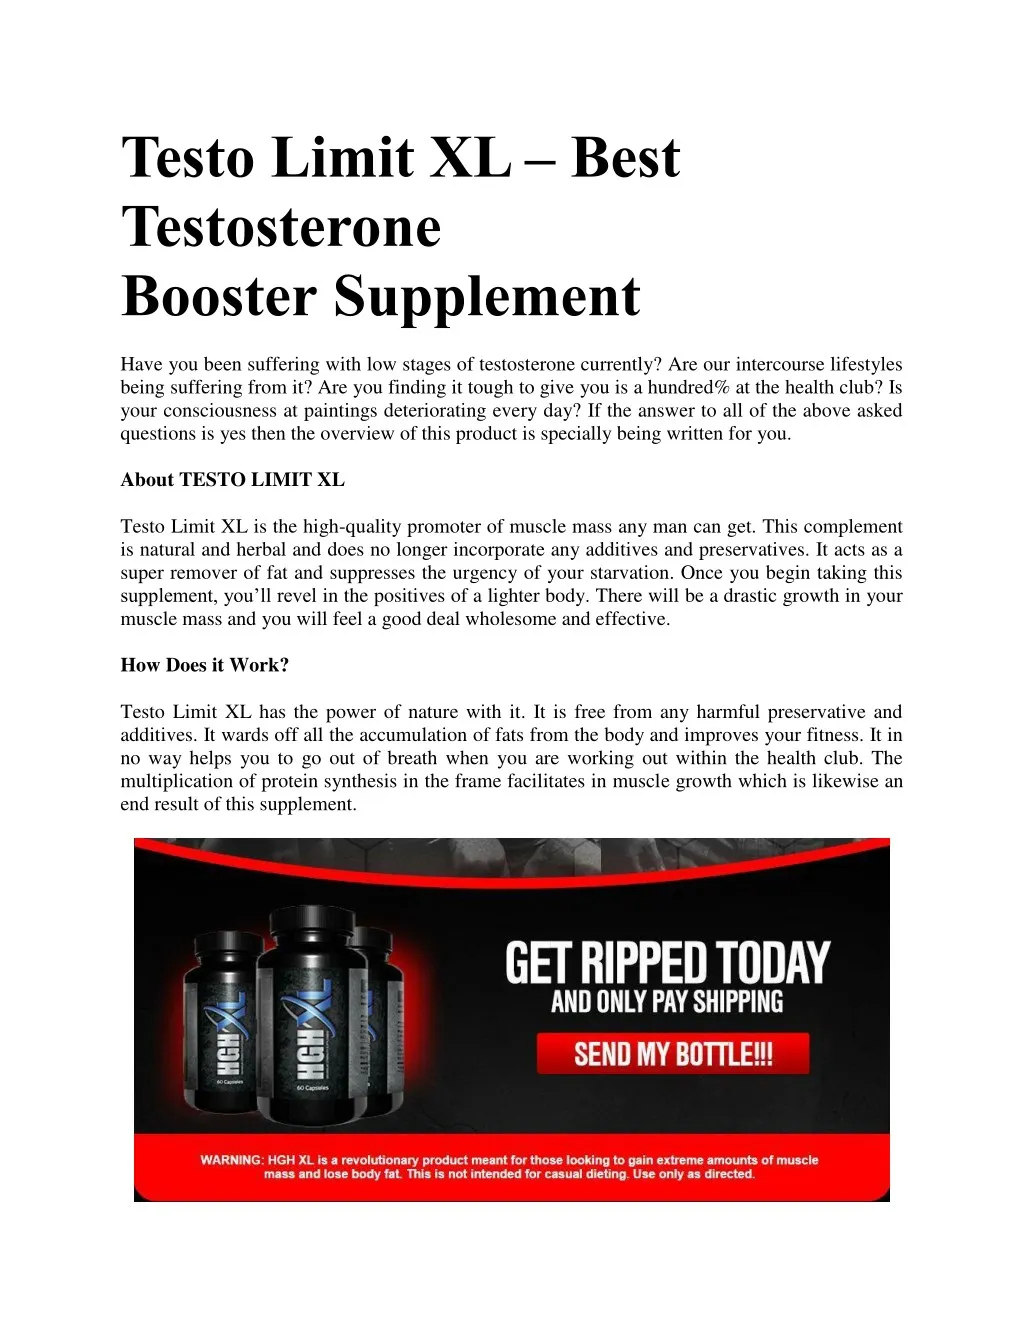 testo limit xl best testosterone booster